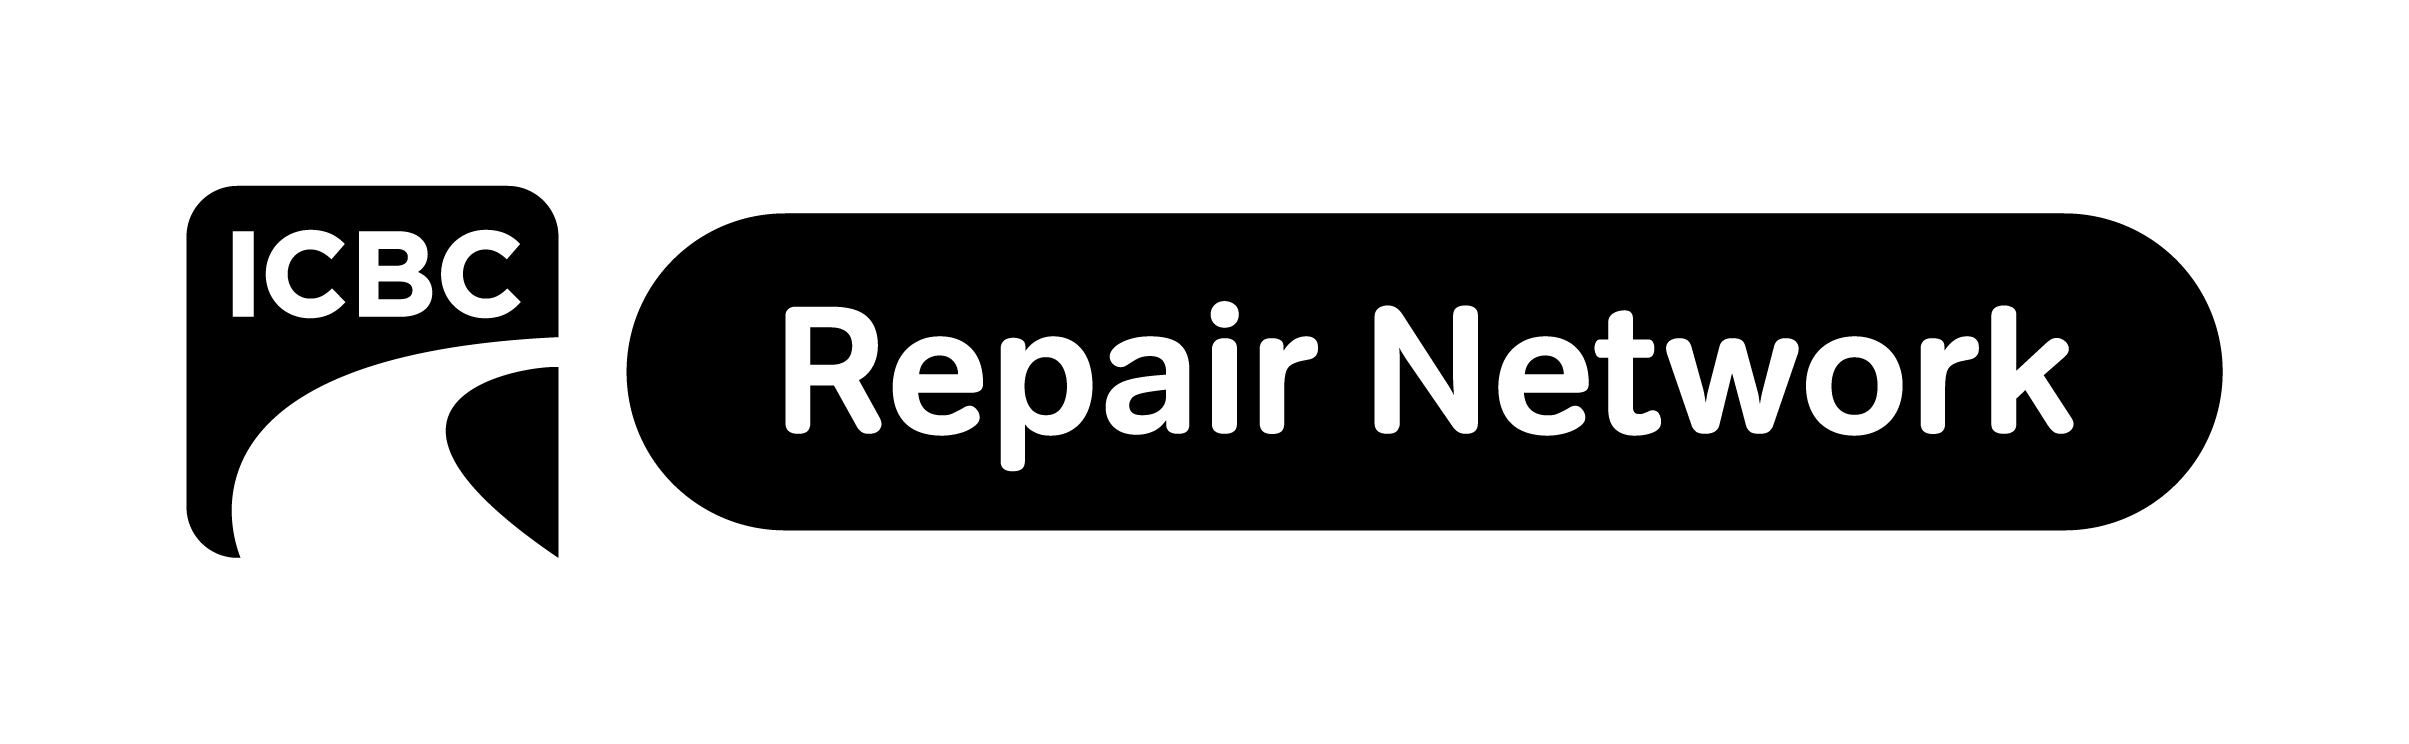 ICBC Repair Network Logo